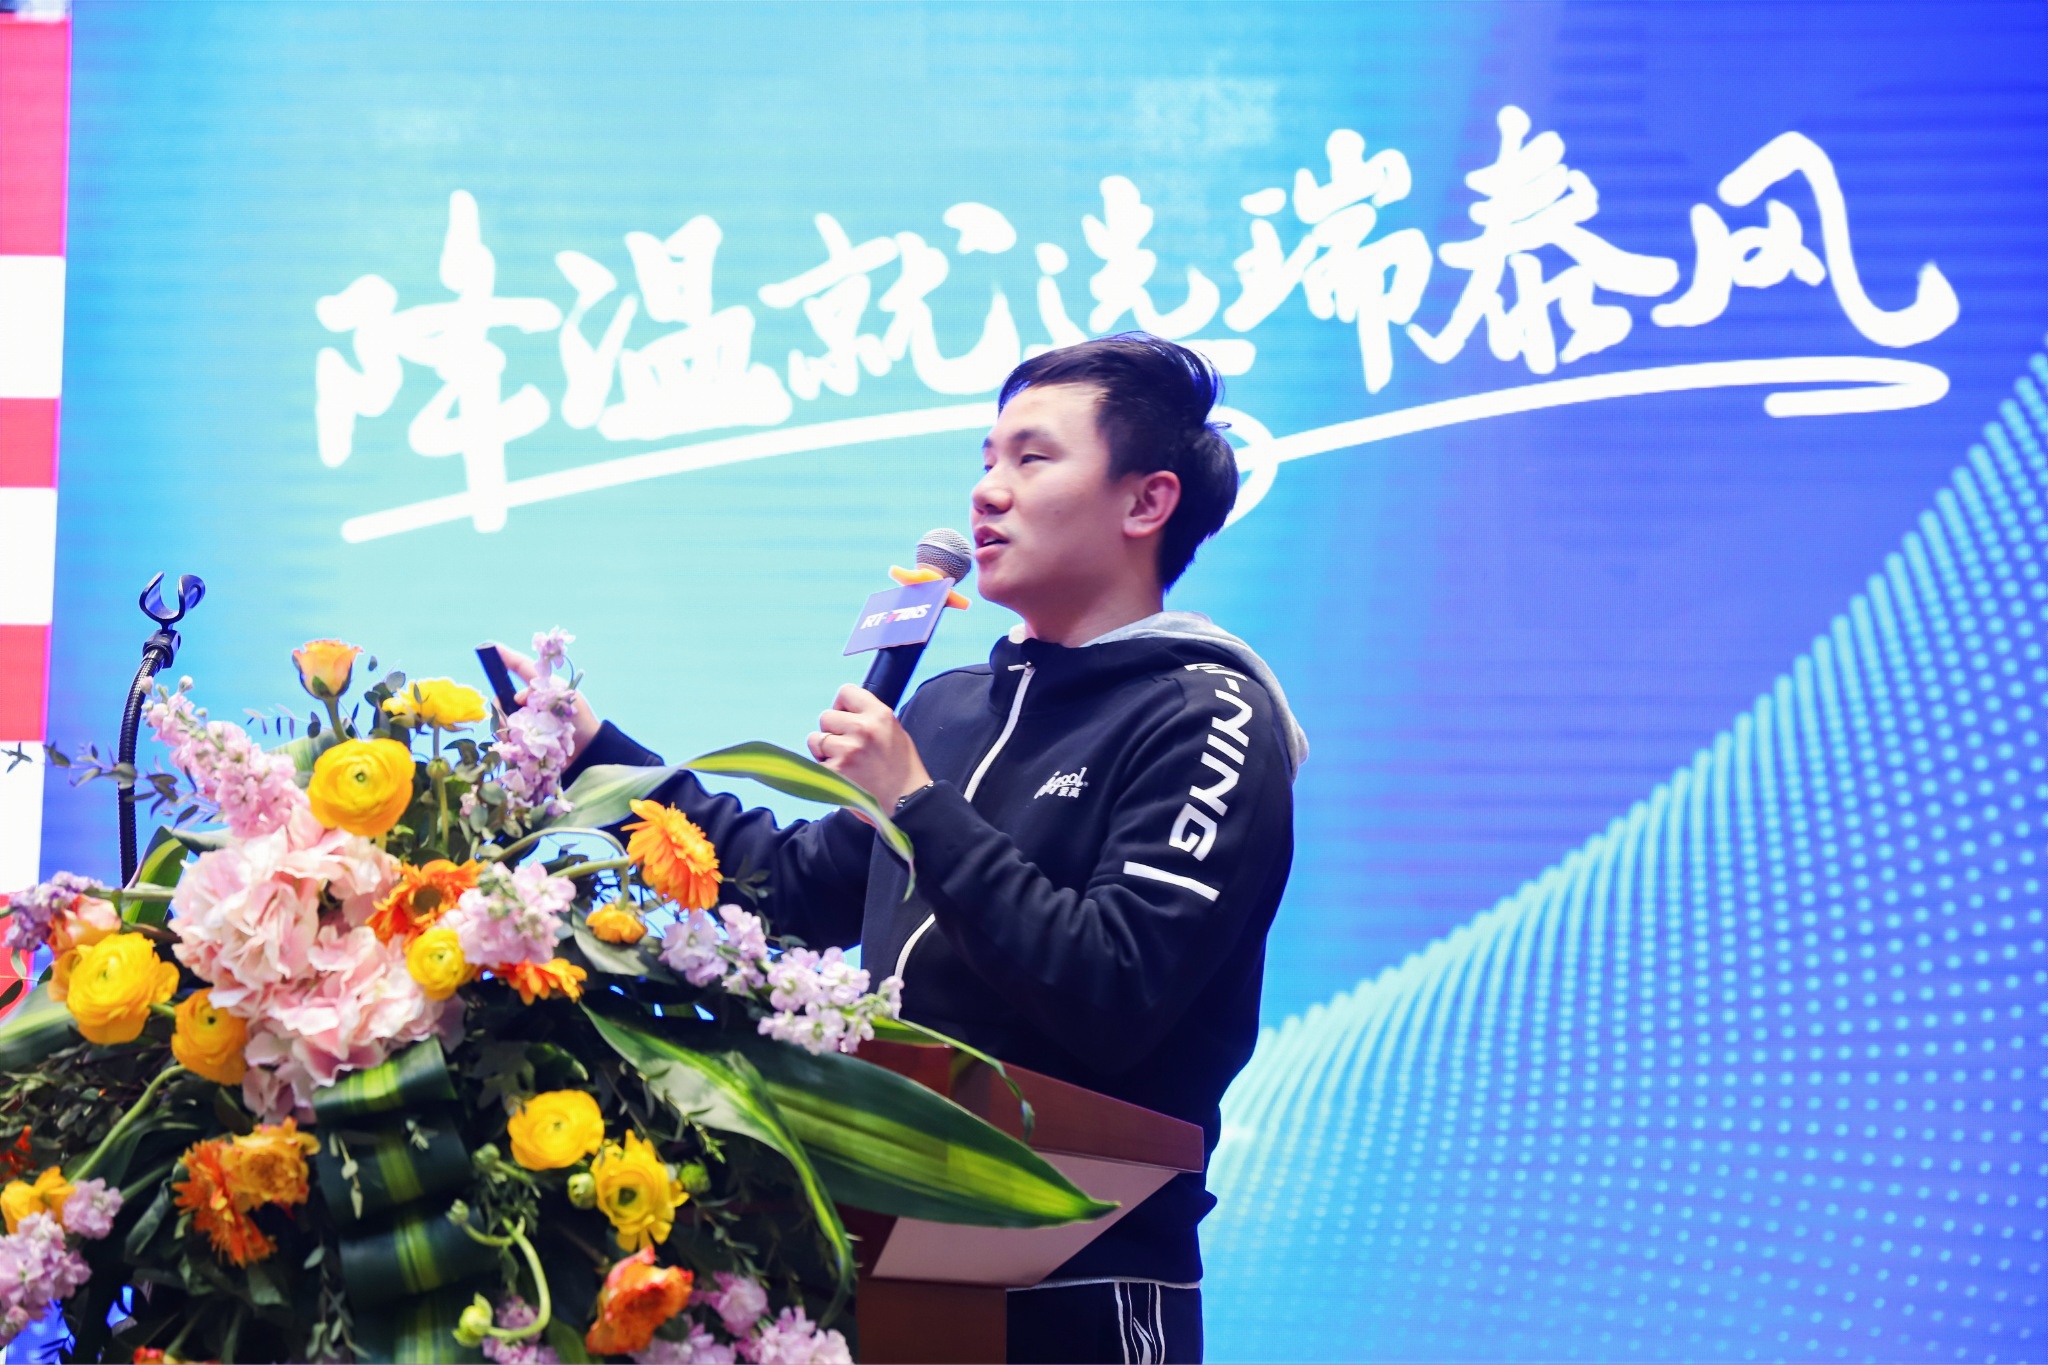 爱高体育总经理梁嘉华先生发表战略合作展望